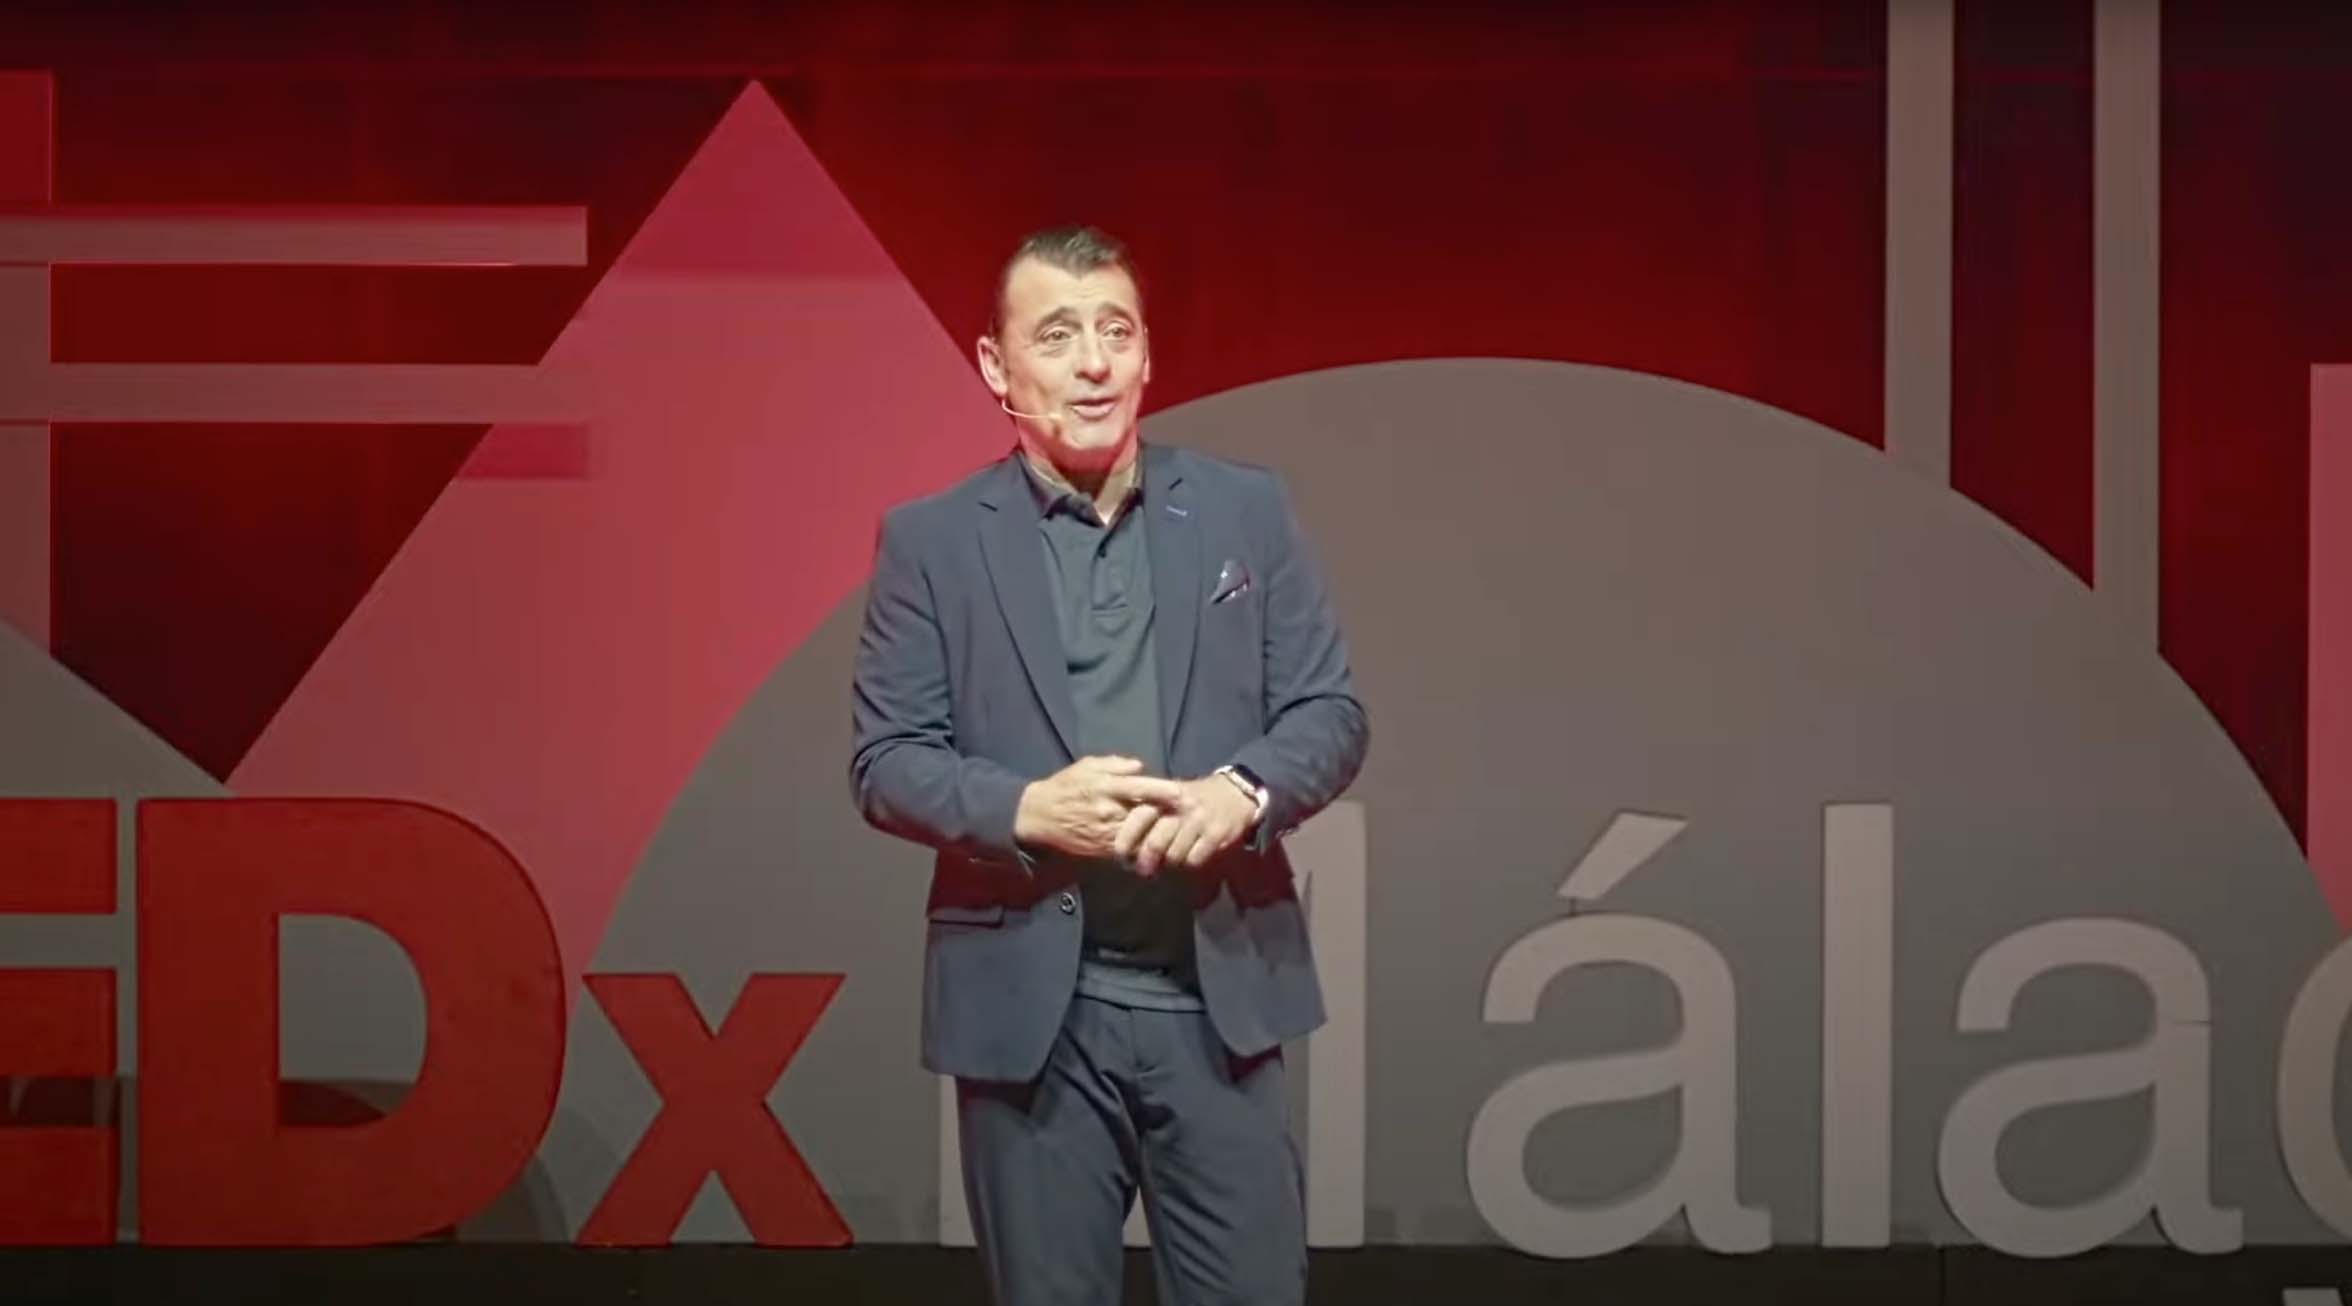 La adicción, el vacío interior | Toni Zenet | TEDxMálaga